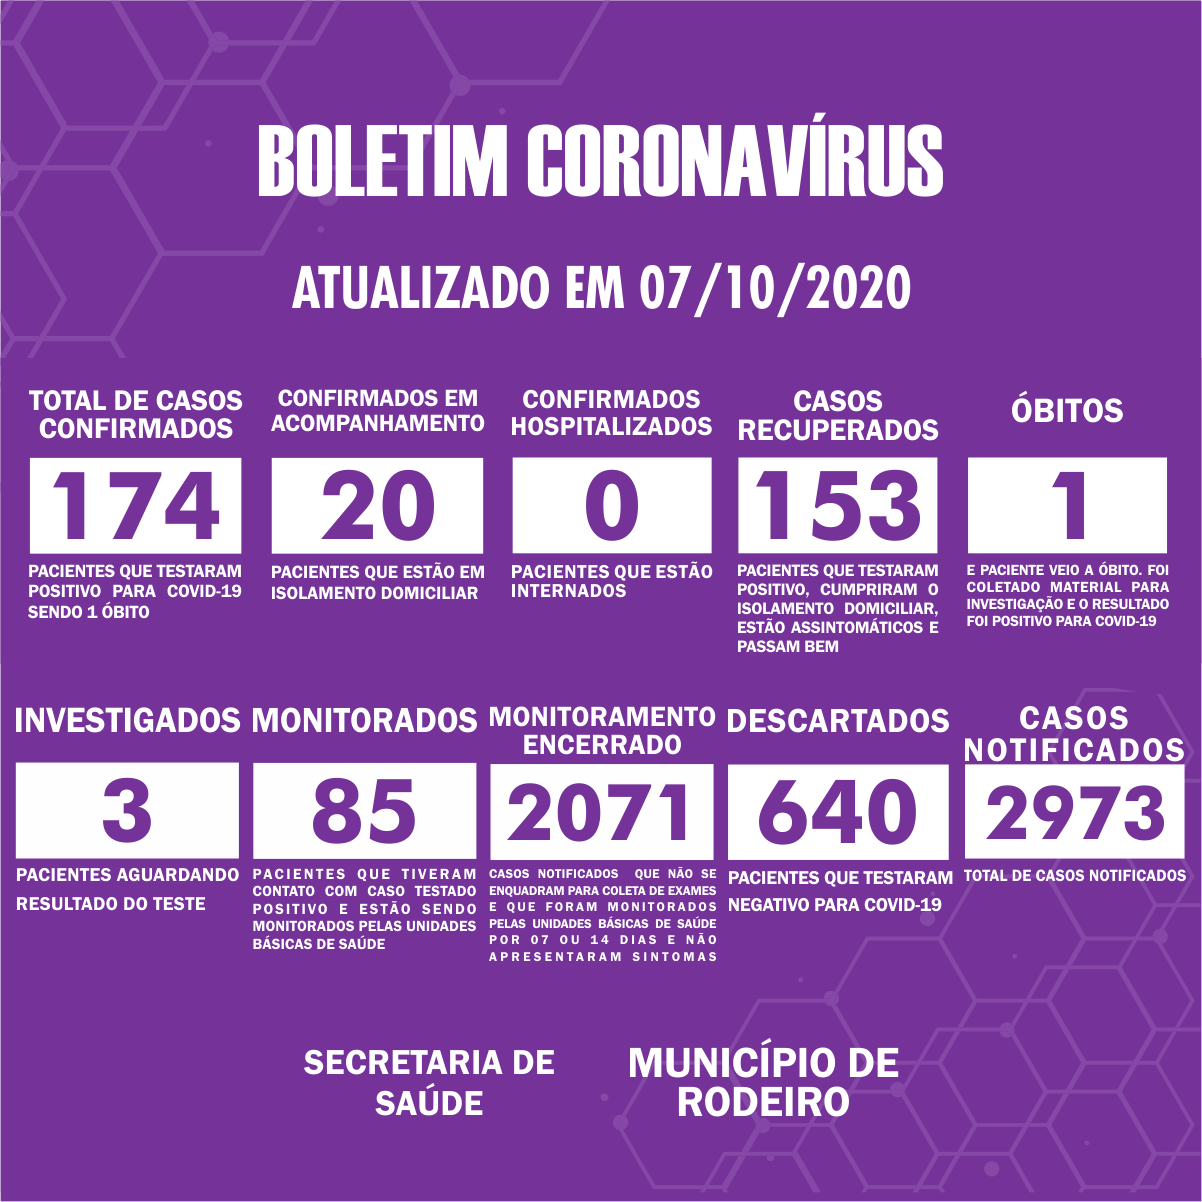 Boletim Epidemiológico do Município de Rodeiro sobre coronavírus, atualizado em 07/10/2020